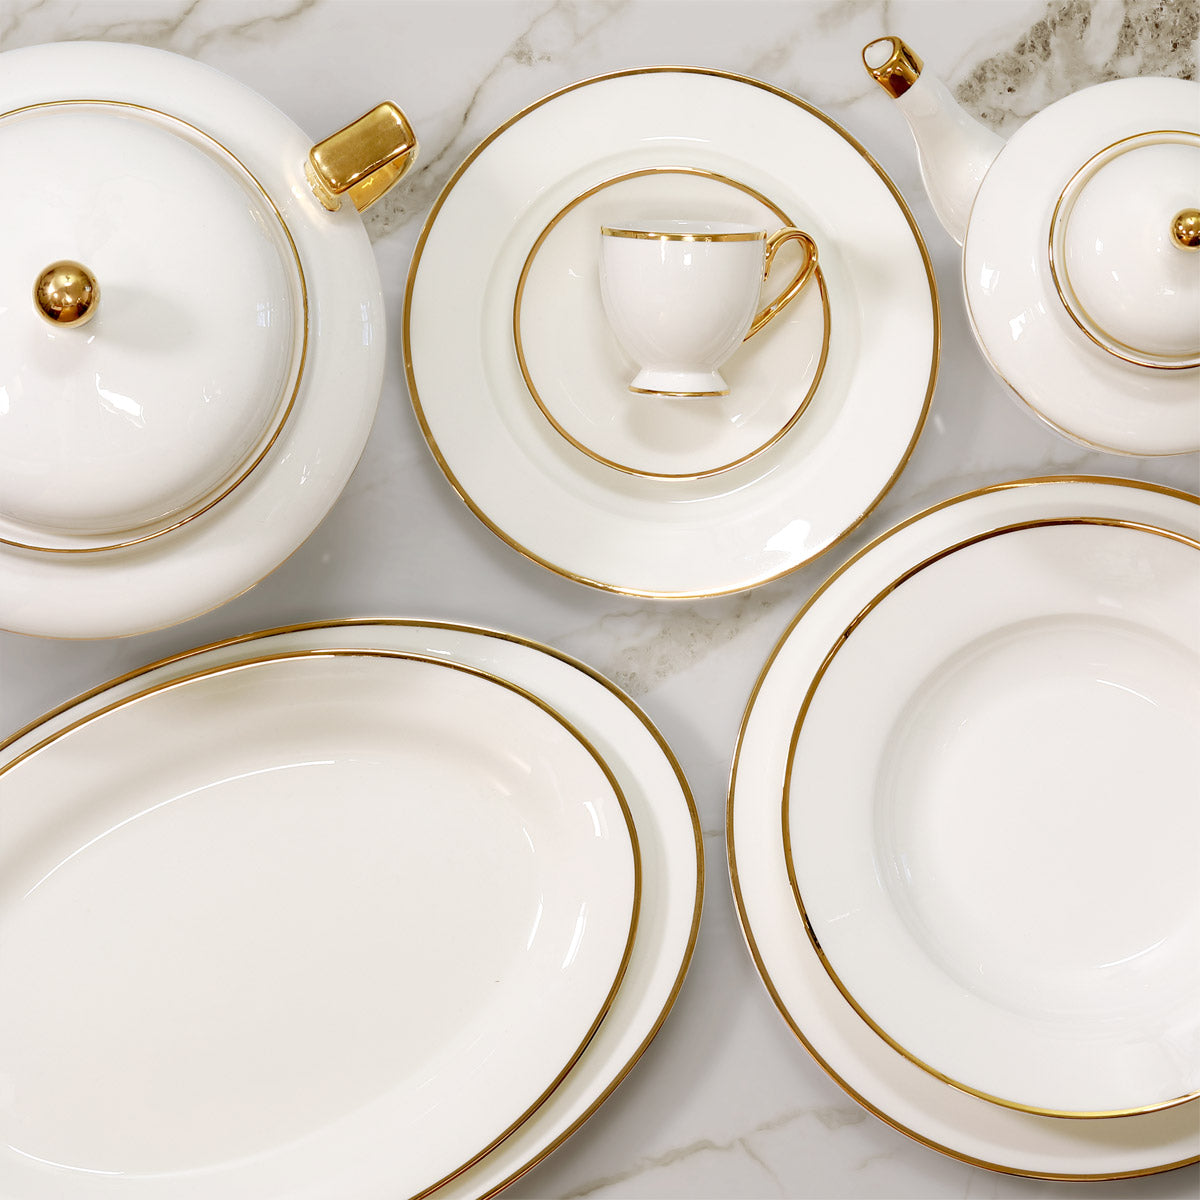 Servizio piatti in fine porcellana con decoro filo oro - Avant